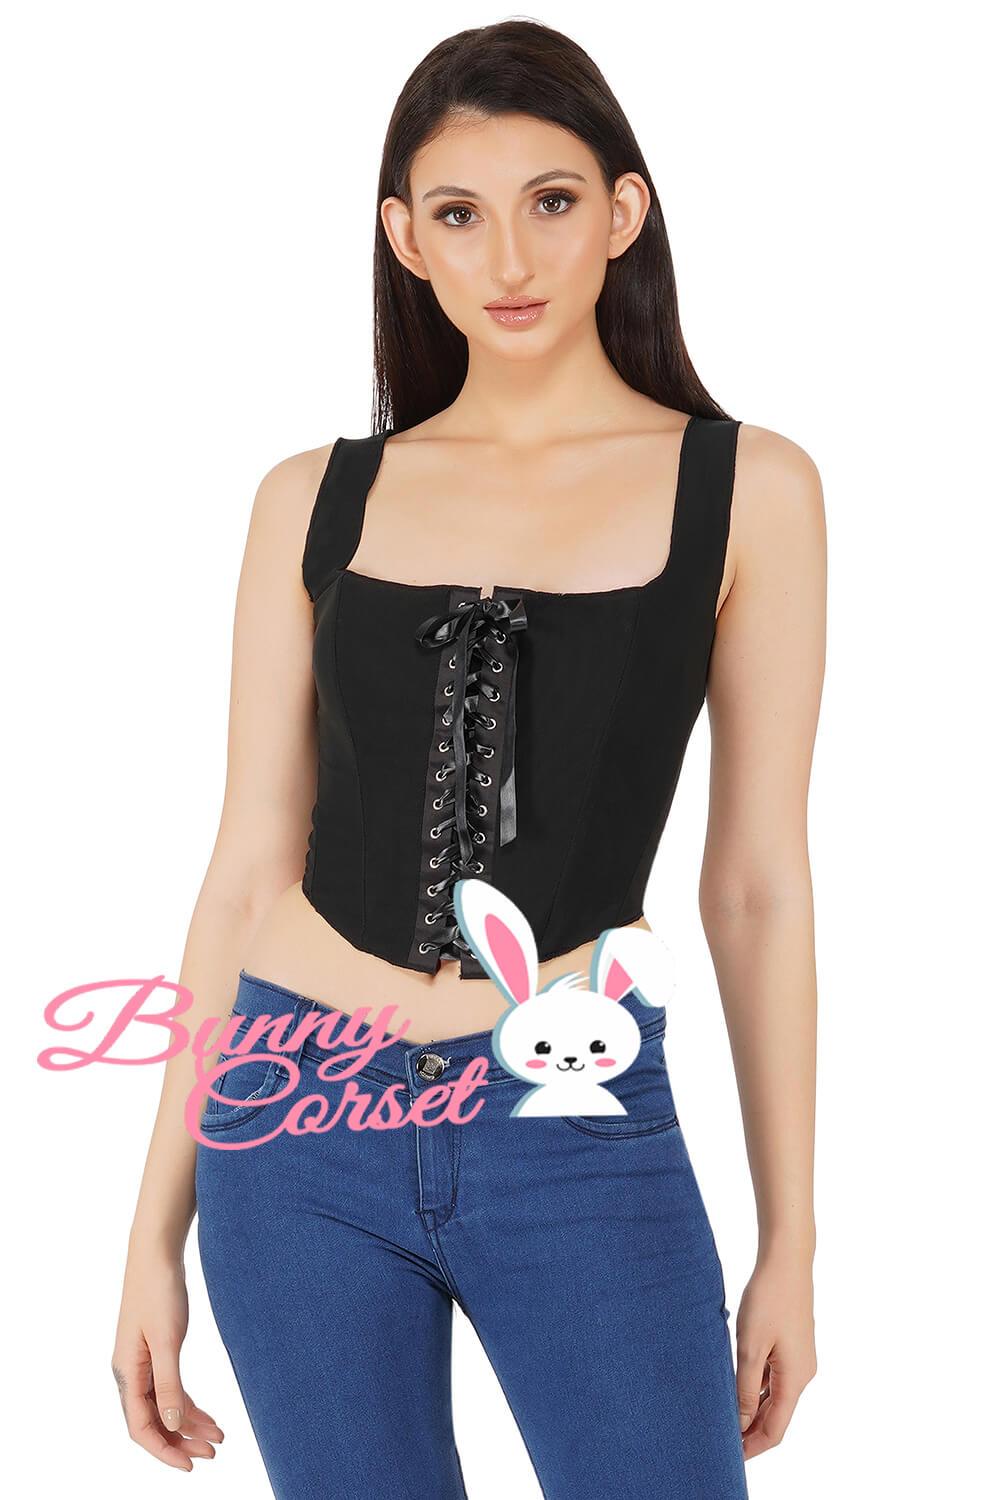 https://www.corsetdeal.com/cdn/shop/products/BC-1660_F_Bunny_Corset_Top_Mesh_Corset_Black_Corset_3aa20f3d-e137-4218-b75d-a317b8a61411.jpg?v=1635223346